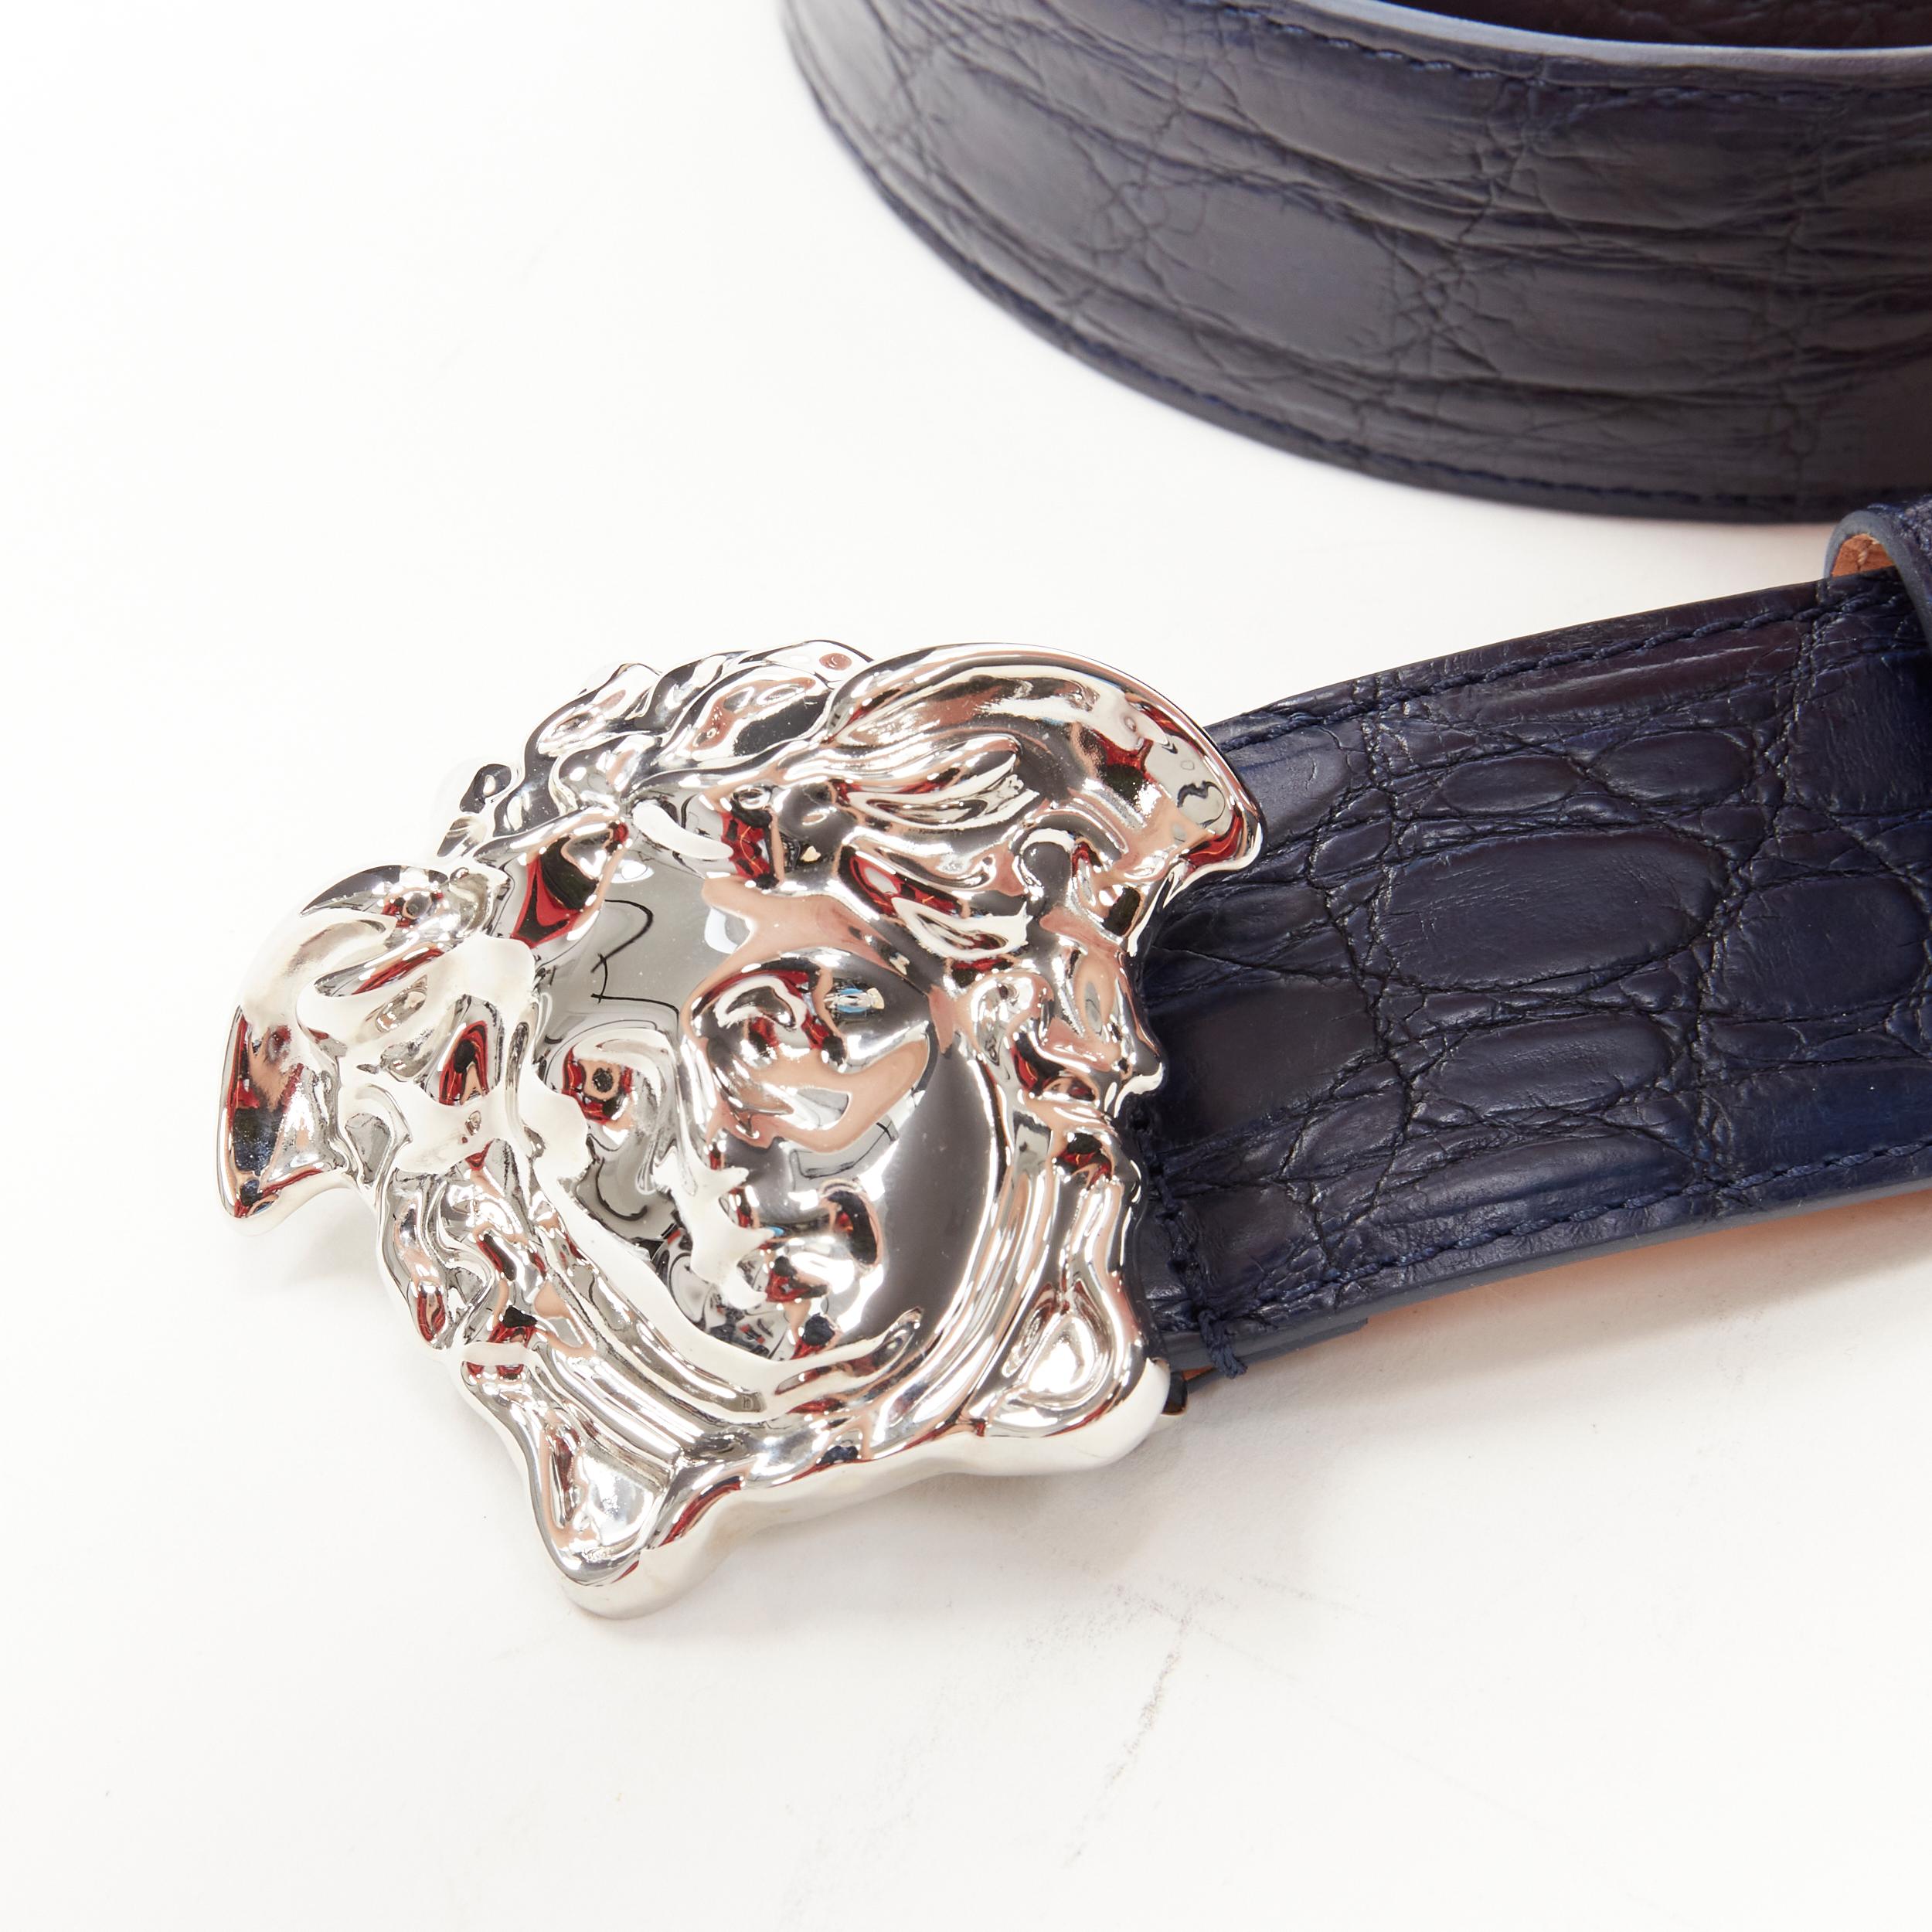 Men's new VERSACE $1200 La Medusa silver buckle blue croc leather belt 115cm 44-48